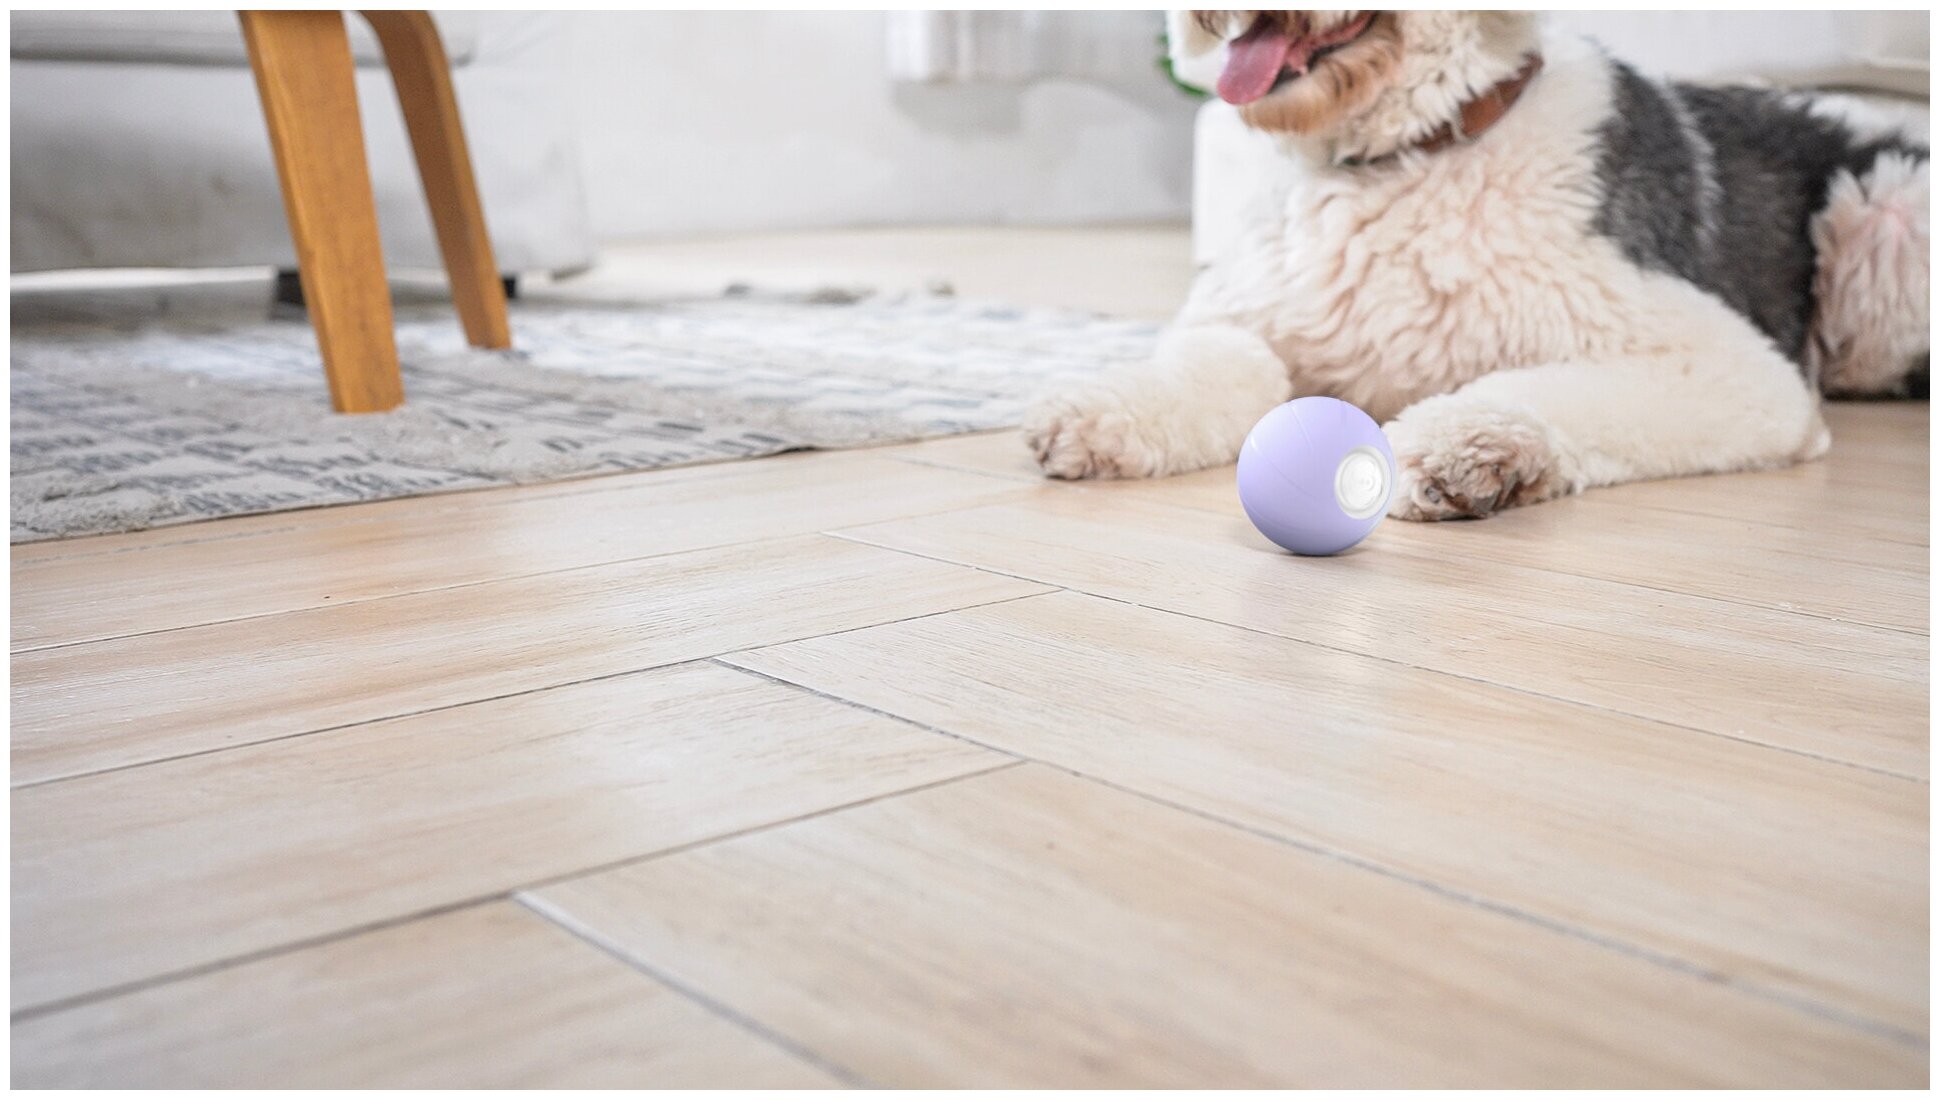 Cheerble Wicked Ball PE интерактивная умная игрушка резиновый мяч для собак из натурального каучука для средних, крупных пород более 15кг, USB зарядка - фотография № 10